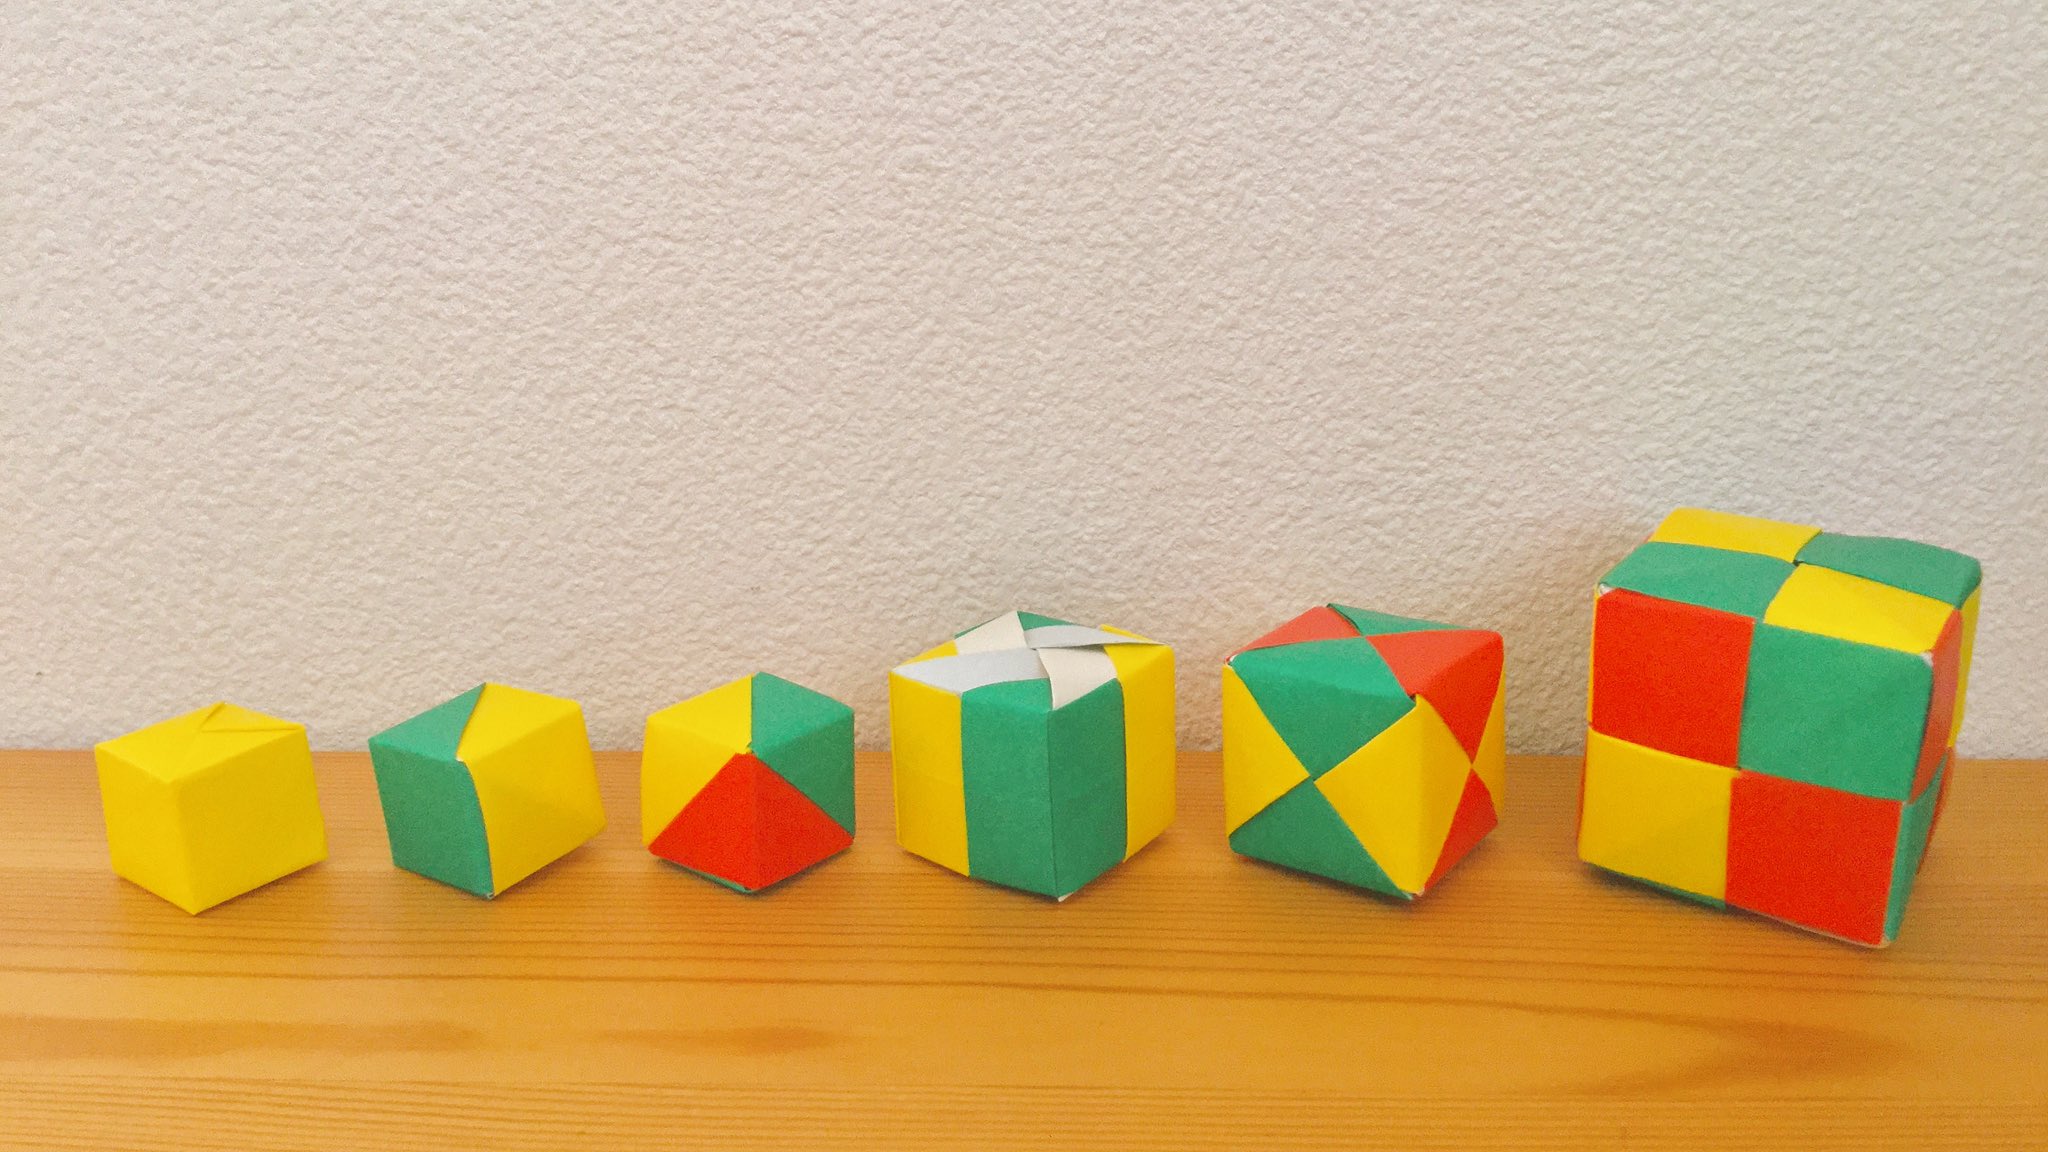 Origami 折り紙のいいところ 1枚でも作れる 2枚でも 3枚でも 枚でも作れる ユニット折り紙 新しい世界のたのしみ 布施知子 著 おりがみ ねじり折り プロジェクトf 編 より立方体 正六面体 左から藤本キューブ 1枚 2枚組 3枚組 4